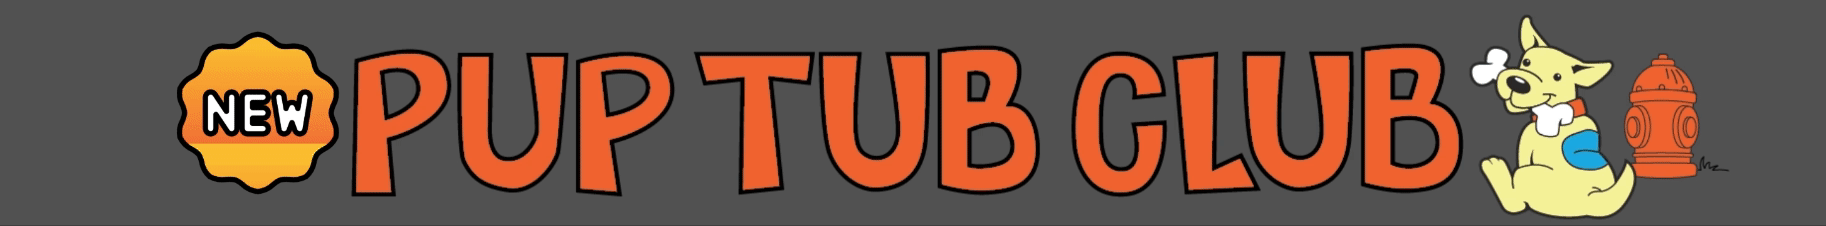 Pup Tub Club 728x90